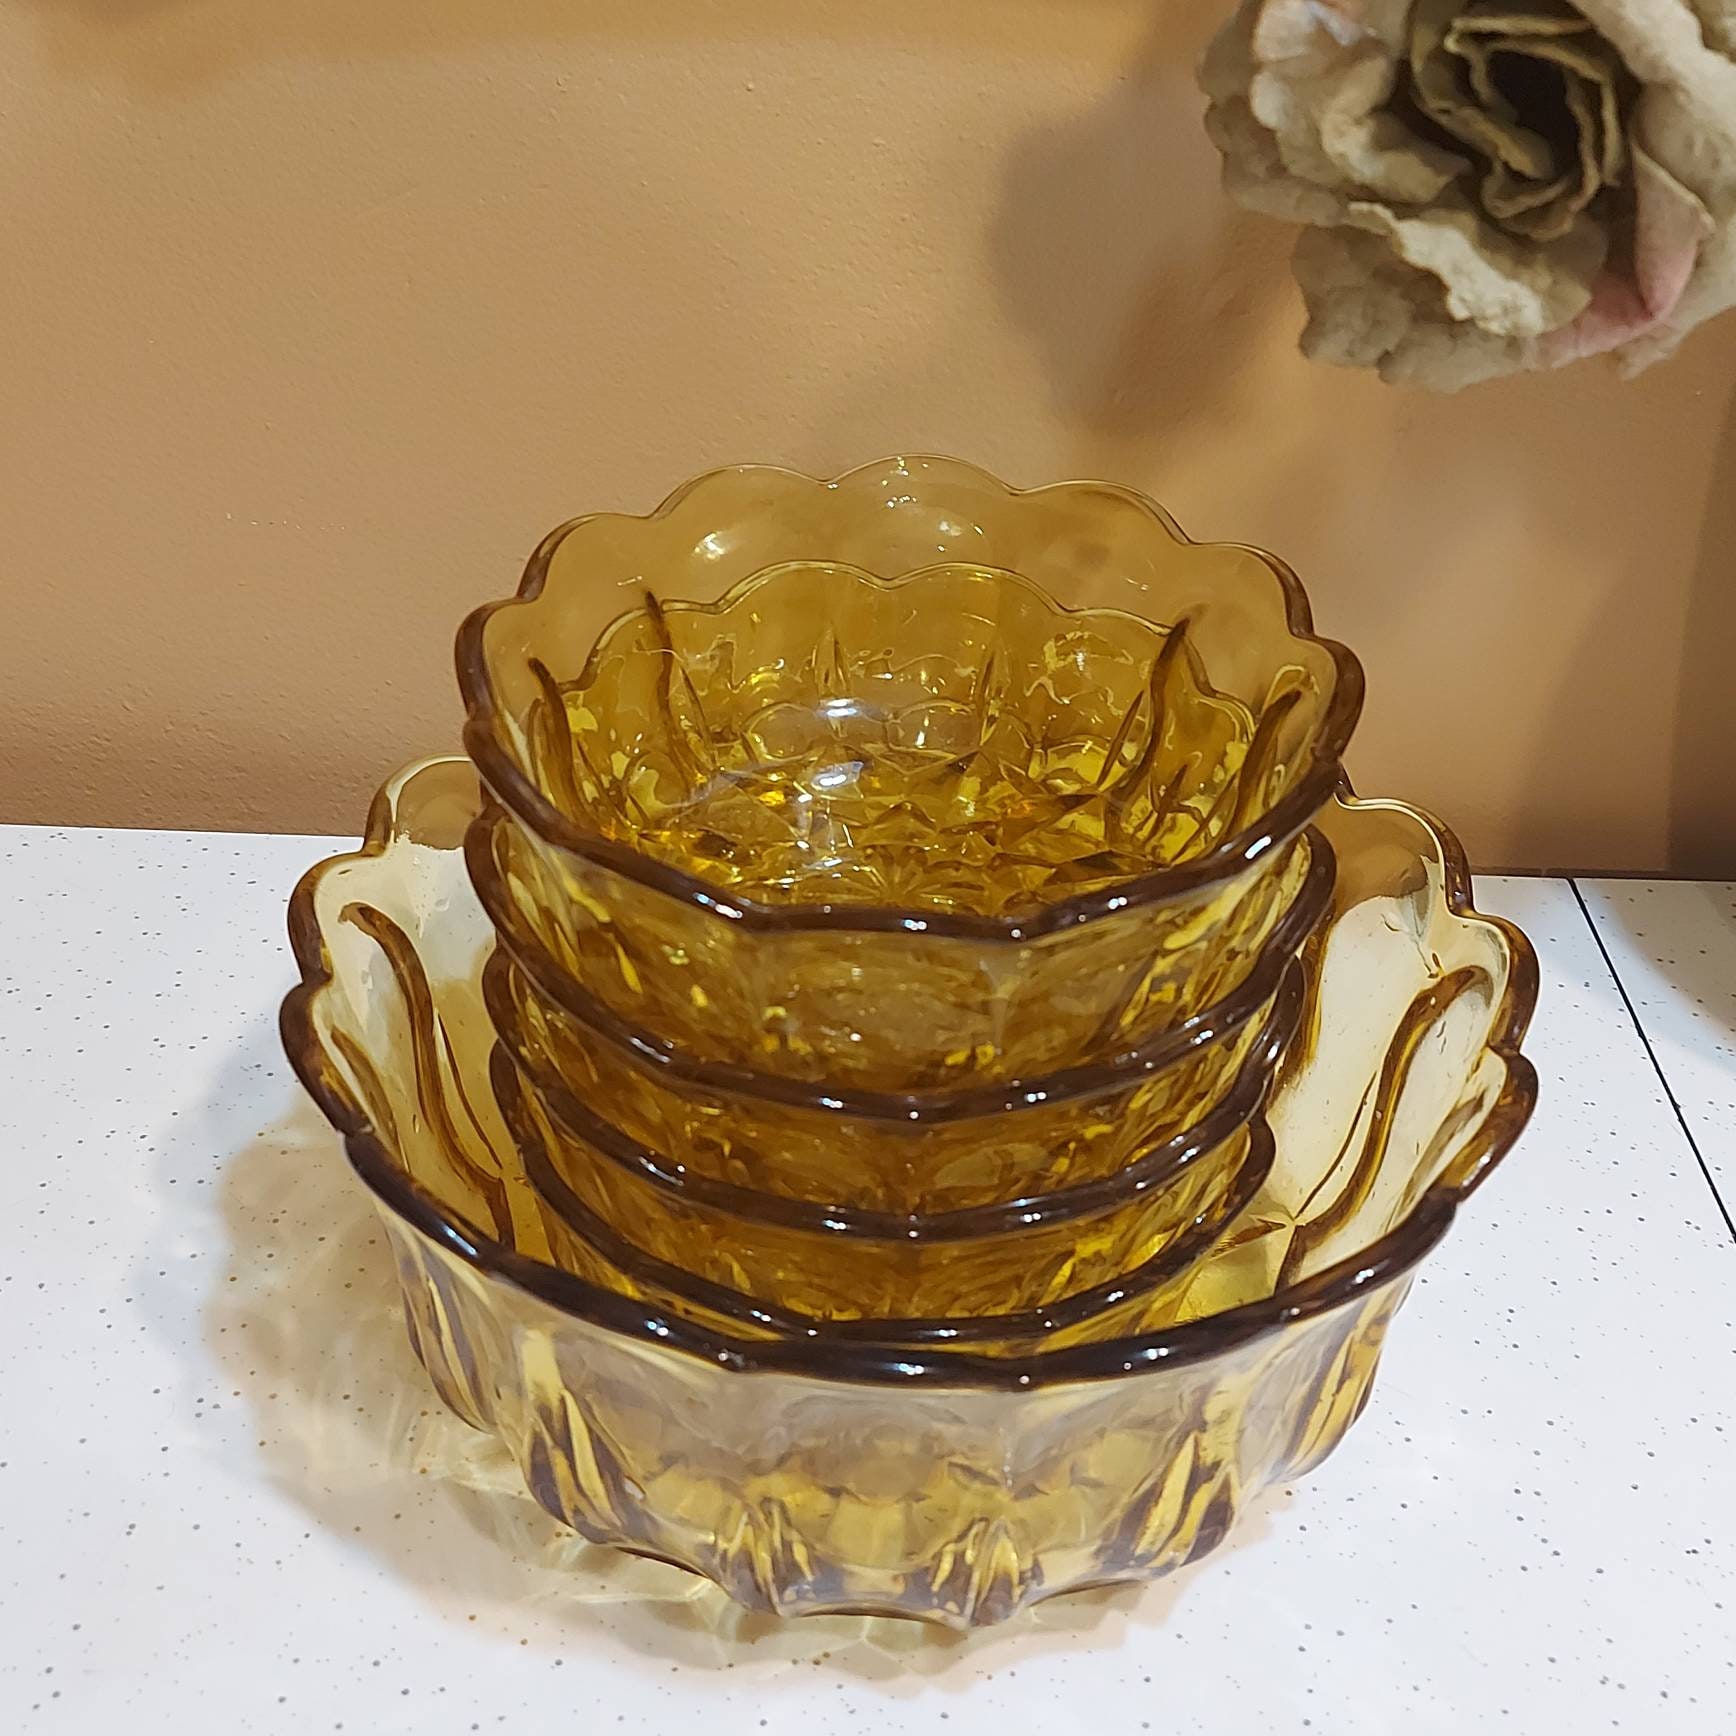 Vintage Cut Glass Bowl Set Vintage Serving Bowls. Collectible Glass Bowls Vintage Salad Bowls Made in USA Glass Bowls